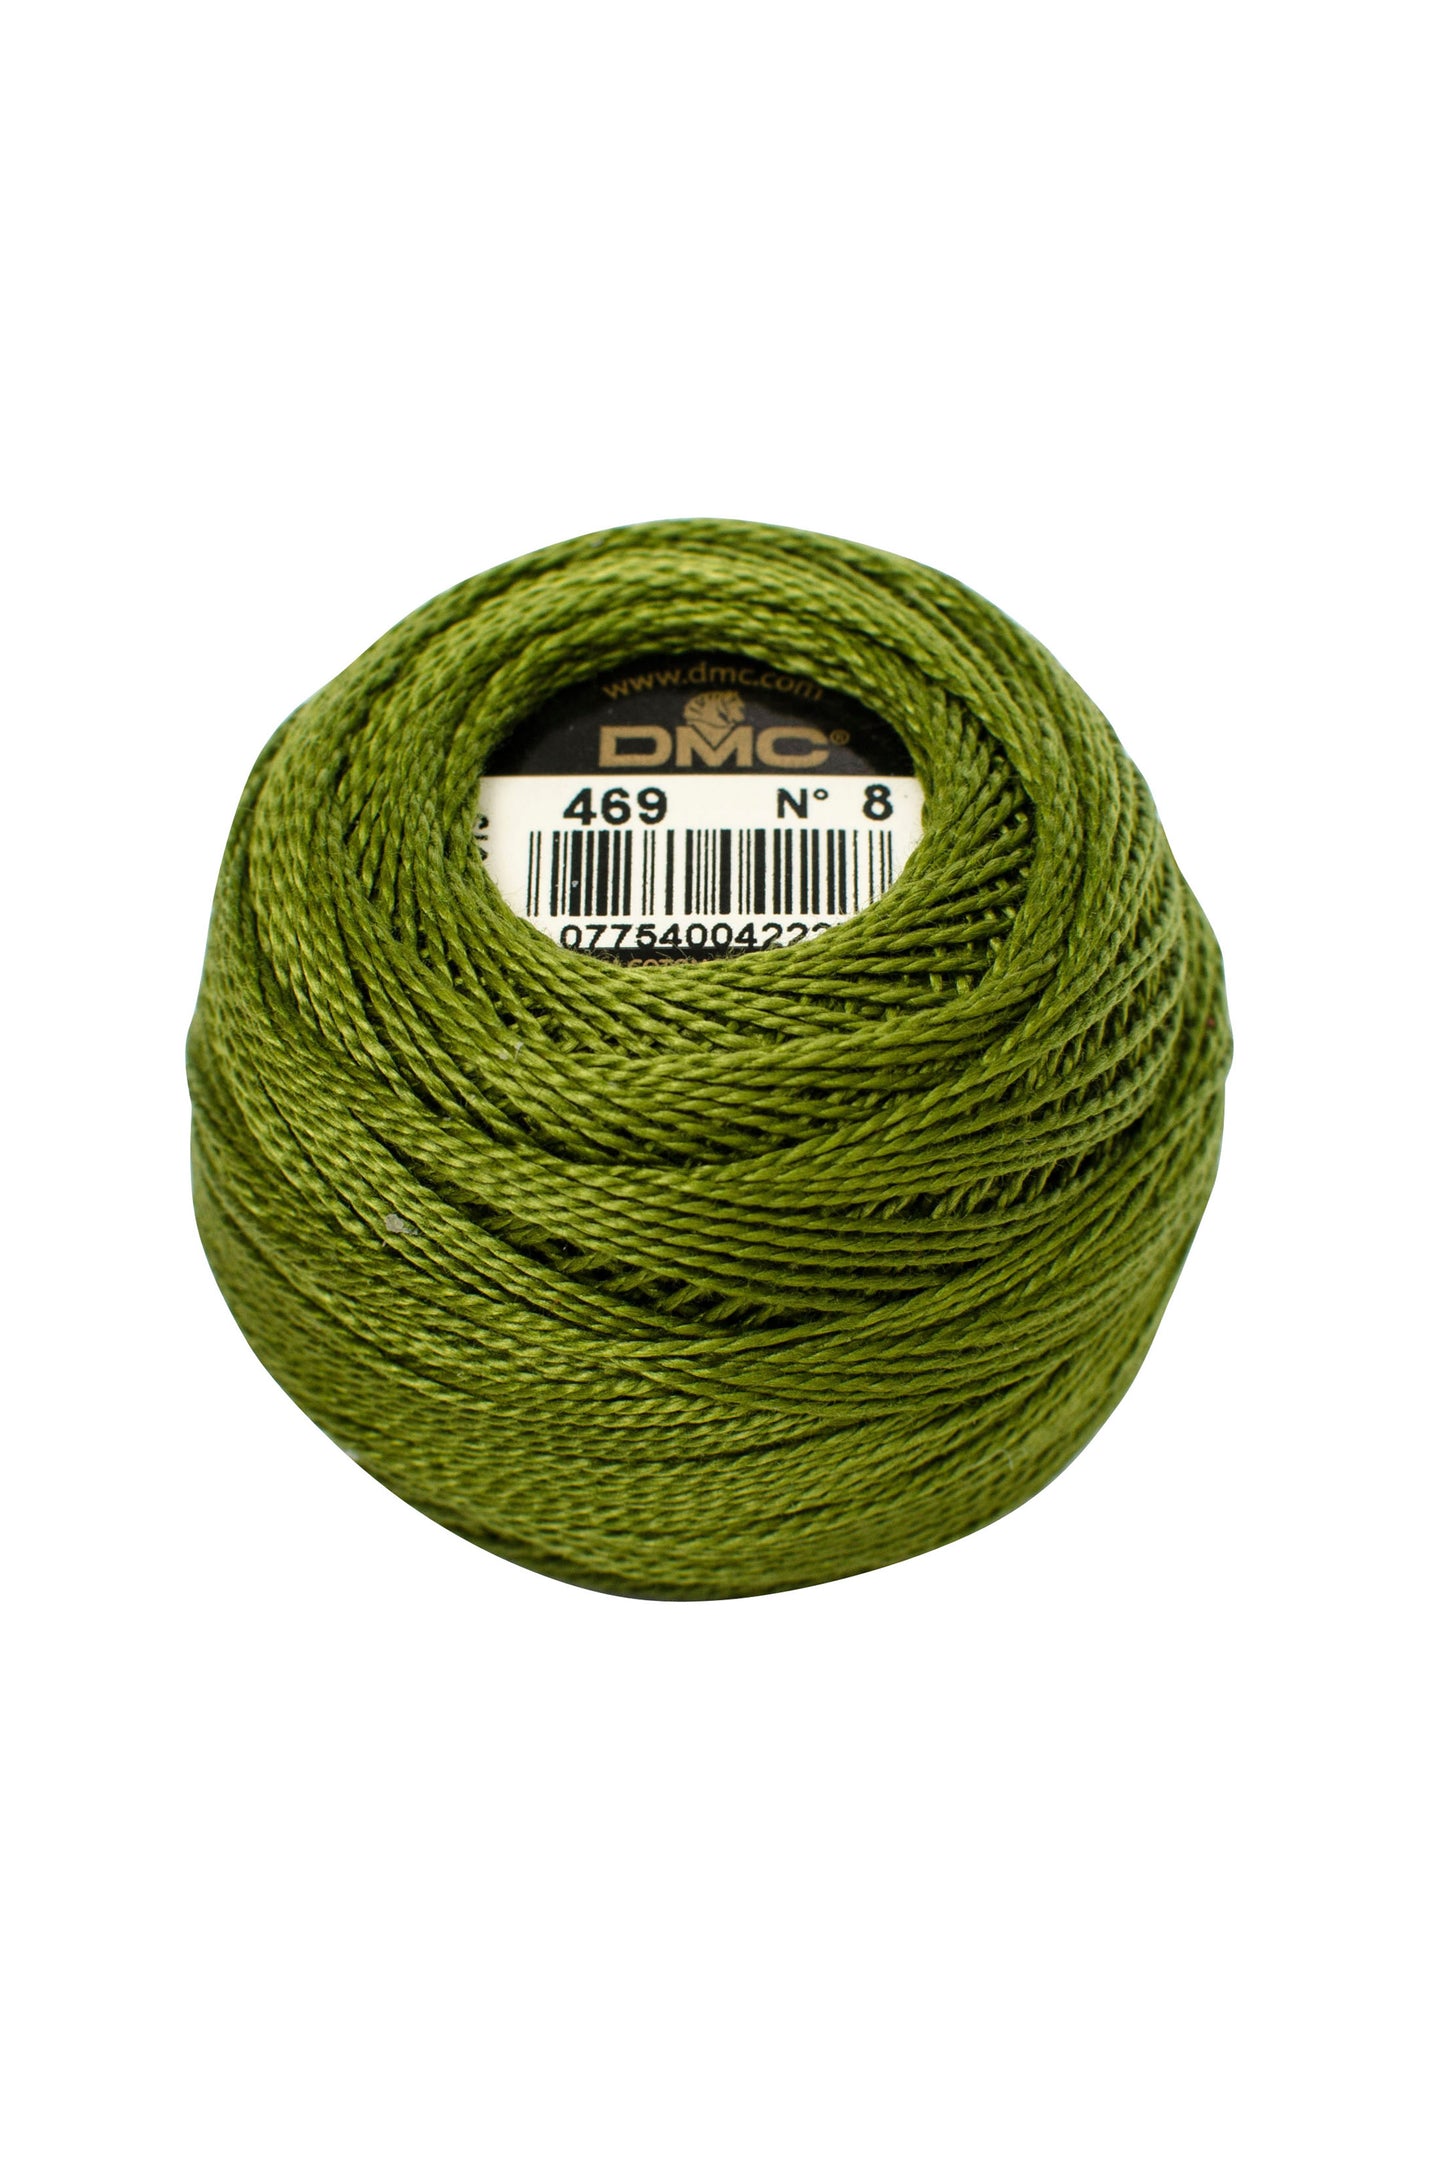 469 Avocado Green - DMC #8 Perle Cotton Ball